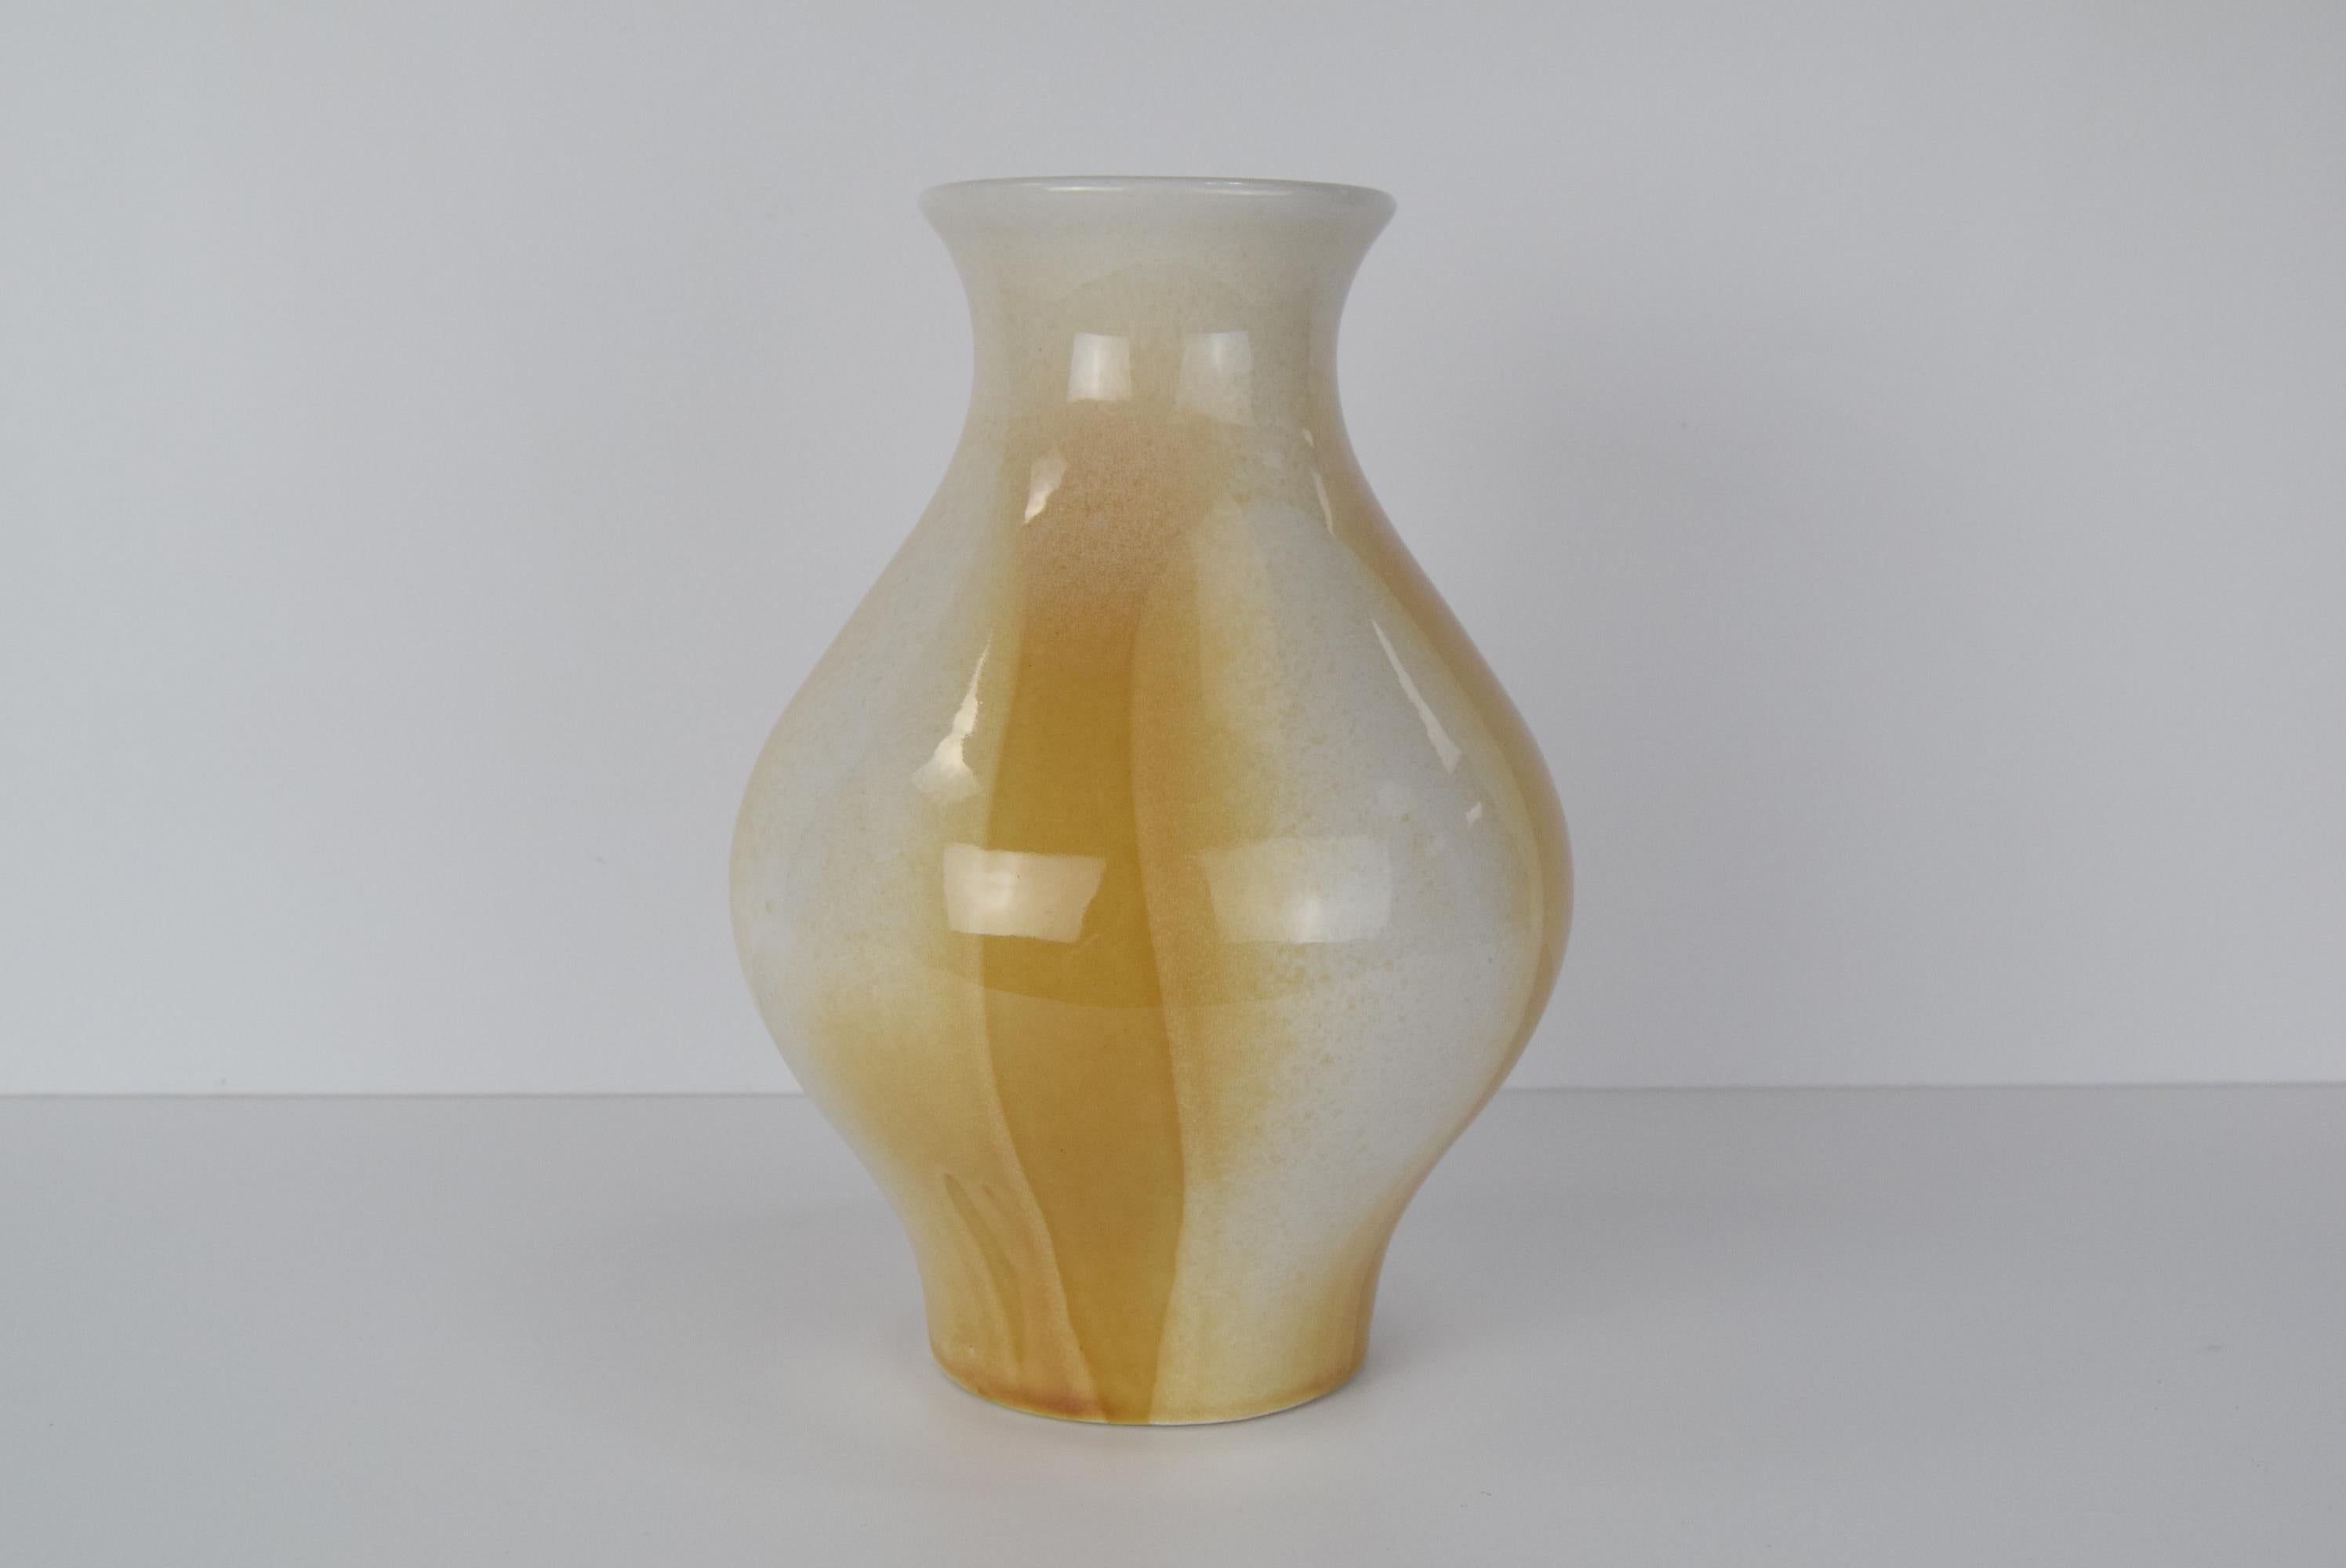 
Vintage-Vase aus Keramik, hergestellt von Ditmar Urbach in der Tschechoslowakei im Jahr 1964.
Aus glasierter, keramischer Masse
Collection'S Julie
Die Vase hat einen kleinen Chip (siehe Foto)
Guter Originalzustand